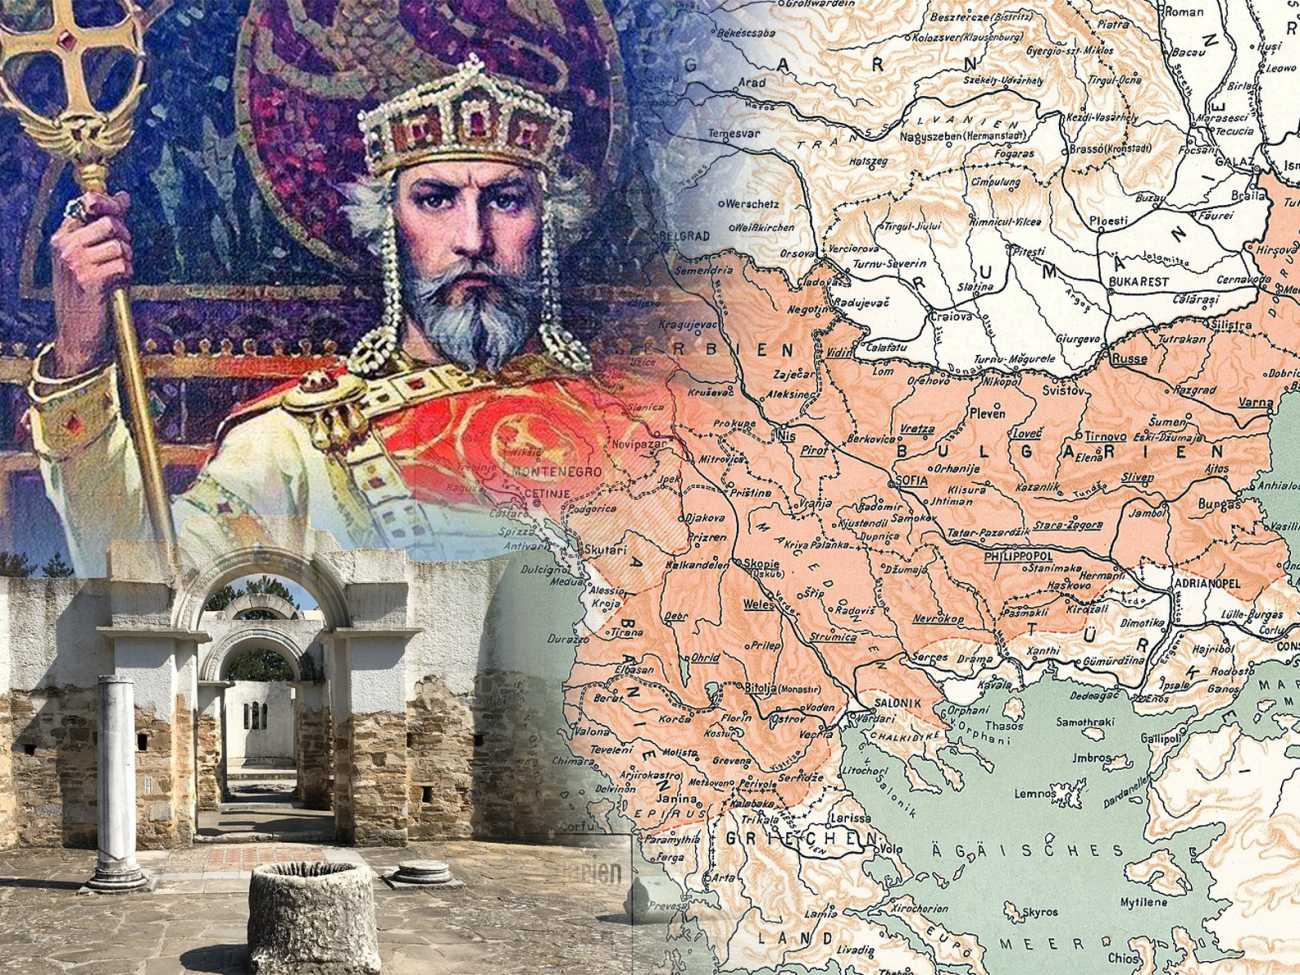 Създаване на Първата българска държава,Управление на хан Аспарух,Мирен договор от 681 г,Военен успех на хан Тервел,Признаване на титлата „хан“,Защита на Константинопол,Възход на хан Кормисош,Бунт на хан Винех,Възкачване на хан Телериг,Ангажиране с хазарския хаган,Консолидиране на властта от хан Кардам,Експанзия на юг при хан Крум,Кодифициране на законите от хан Крум,Анулиране на договора с хазарите,Завладяване на нови територии от хан Омуртаг,Мир с Византийската империя,Управление на хан Маламир,Наследяване от хан Пресиян,Християнизация на България,Преминаване към титлата „цар“,Централизиране на властта от цар Борис I,Въвеждане на кирилицата,Реформи на цар Симеон,Златен век на културата,Управление на цар Петър,Вътрешни борби по времето на цар Самуил,Битка при Беласица,Завладяване на България от Византия,Последният български цар Иван Владислав,Ослепяването на цар Самуиловото семейство,Краят на Първата българска държава,Влиятелни български ханове,Значими събития в историята на Първото българско царство,Външна политика на Първото българско царство,Културно развитие при първите български ханове,Роля на религията в Първото българско царство,Военни постижения на Първото българско царство,Дипломатически отношения на Първото българско царство,Социална структура на Първото българско царство,Икономическо състояние на Първото българско царство,Архитектура и изкуство на Първото българско царство,Наука и образование в Първото българско царство,Търговия и връзки с други култури,Ежедневен живот в Първото българско царство,Забравени истории за Първото българско царство,Археологически открития, свързани с Първото българско царство,Исторически музеи, посветени на Първото българско царство,Книги и документални филми за Първото българско царство,Академични изследвания на Първото българско царство,Учебни програми, включващи историята на Първото българско царство,